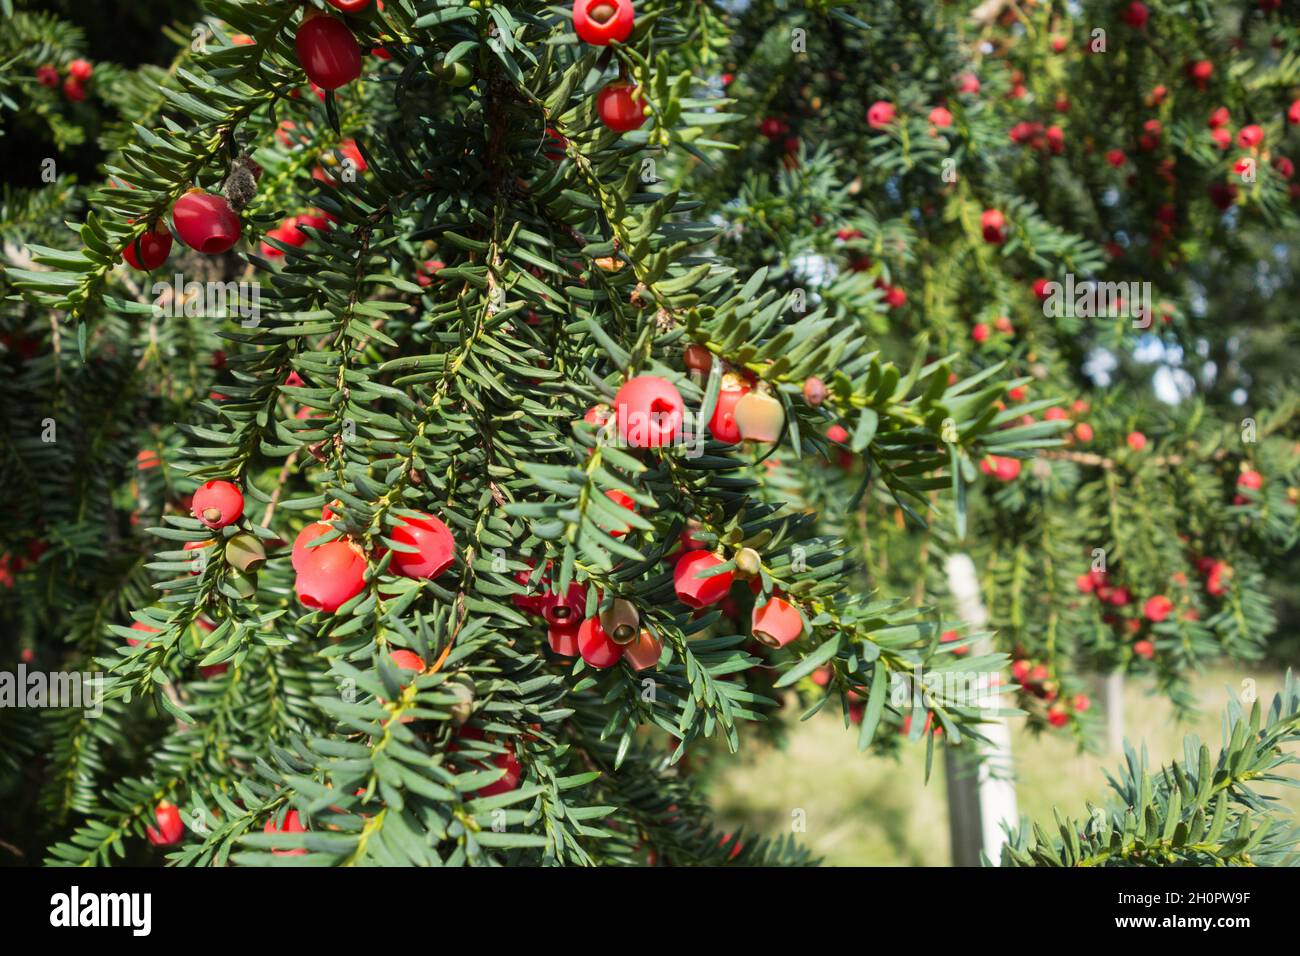 Nahaufnahme von roten, fleischigen Eibenbeeren (Arillen) auf einer Gemeinen Eibe (Taxus baccata), England, Großbritannien Stockfoto